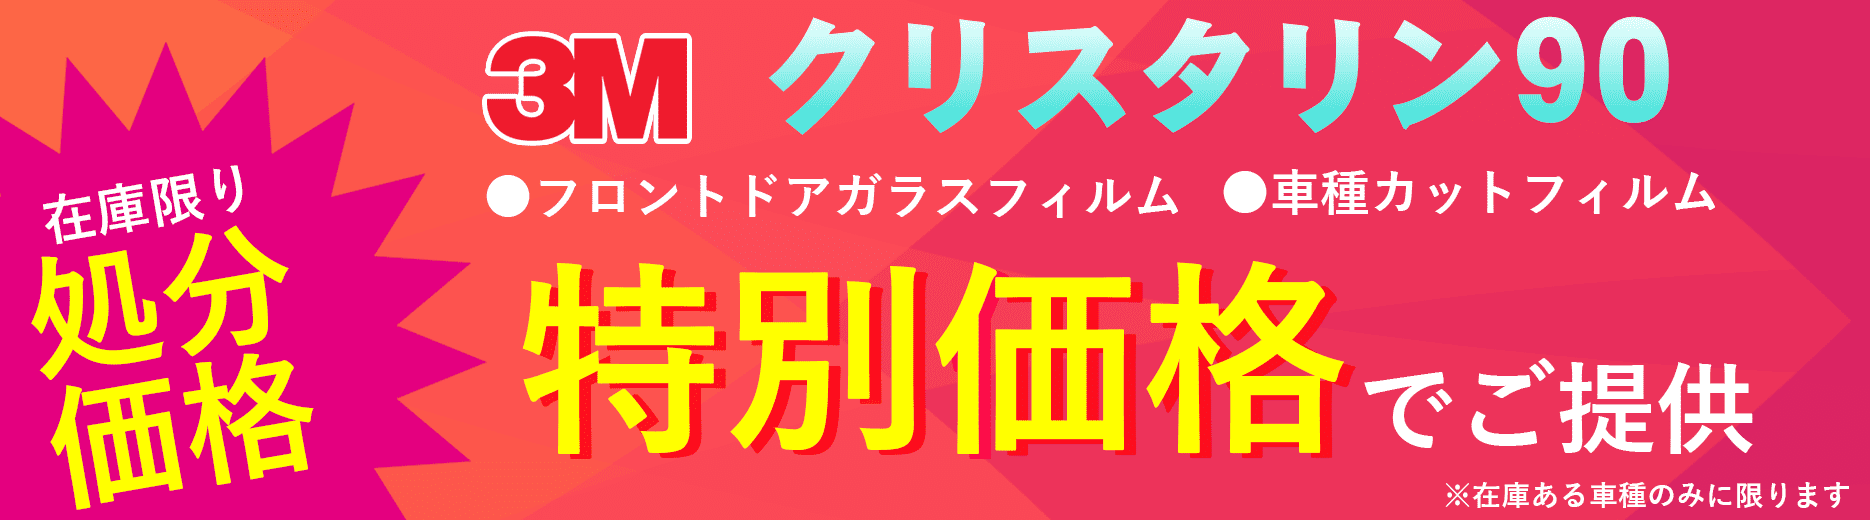 車種別カット済みカーフィルム専門店 車種カットフィルム.com